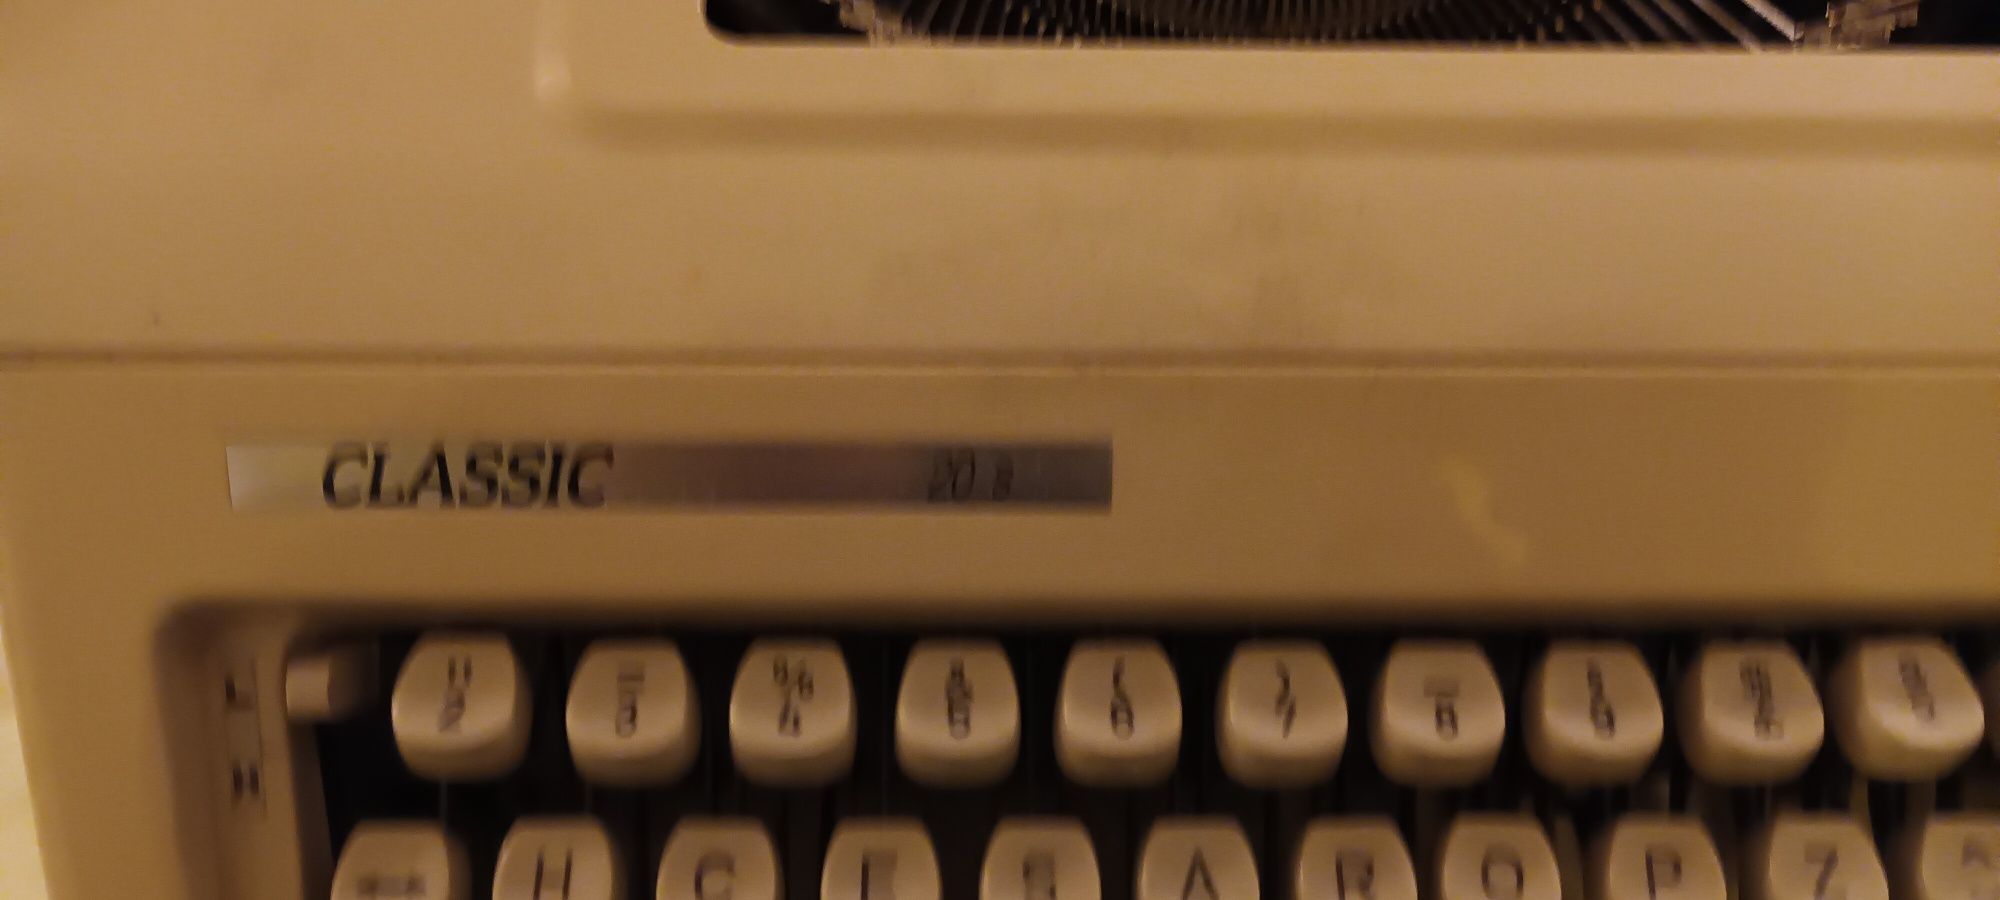 Maquina escrever classica apenas  20€